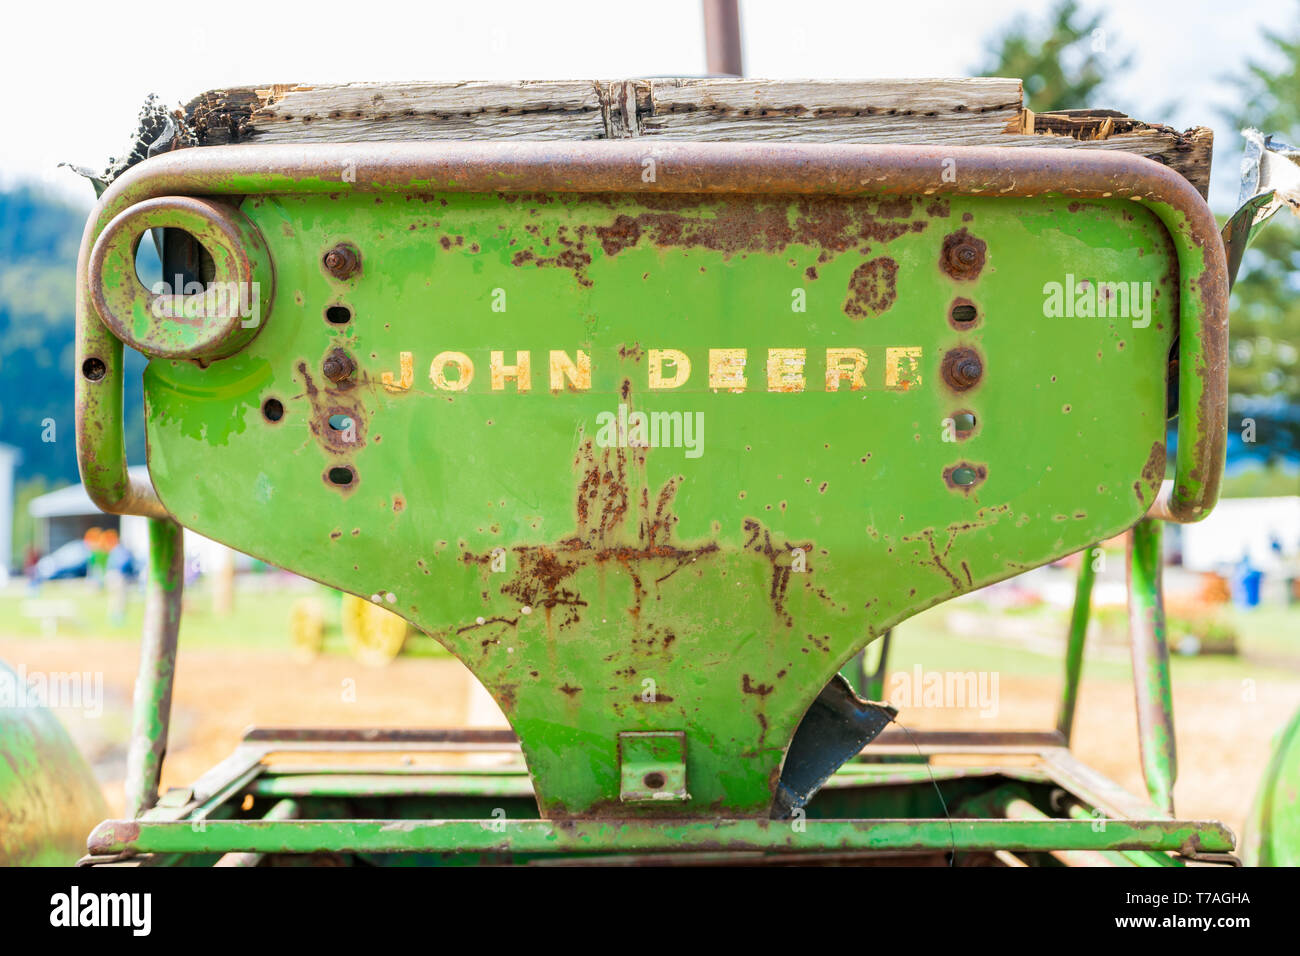 Vecchie e arrugginite trattore John Deere sedile, mostrando il marchio denominativo logo sul retro, usurato. Classic John Deere immagine di un trattore antiquati, o fattoria dotare Foto Stock